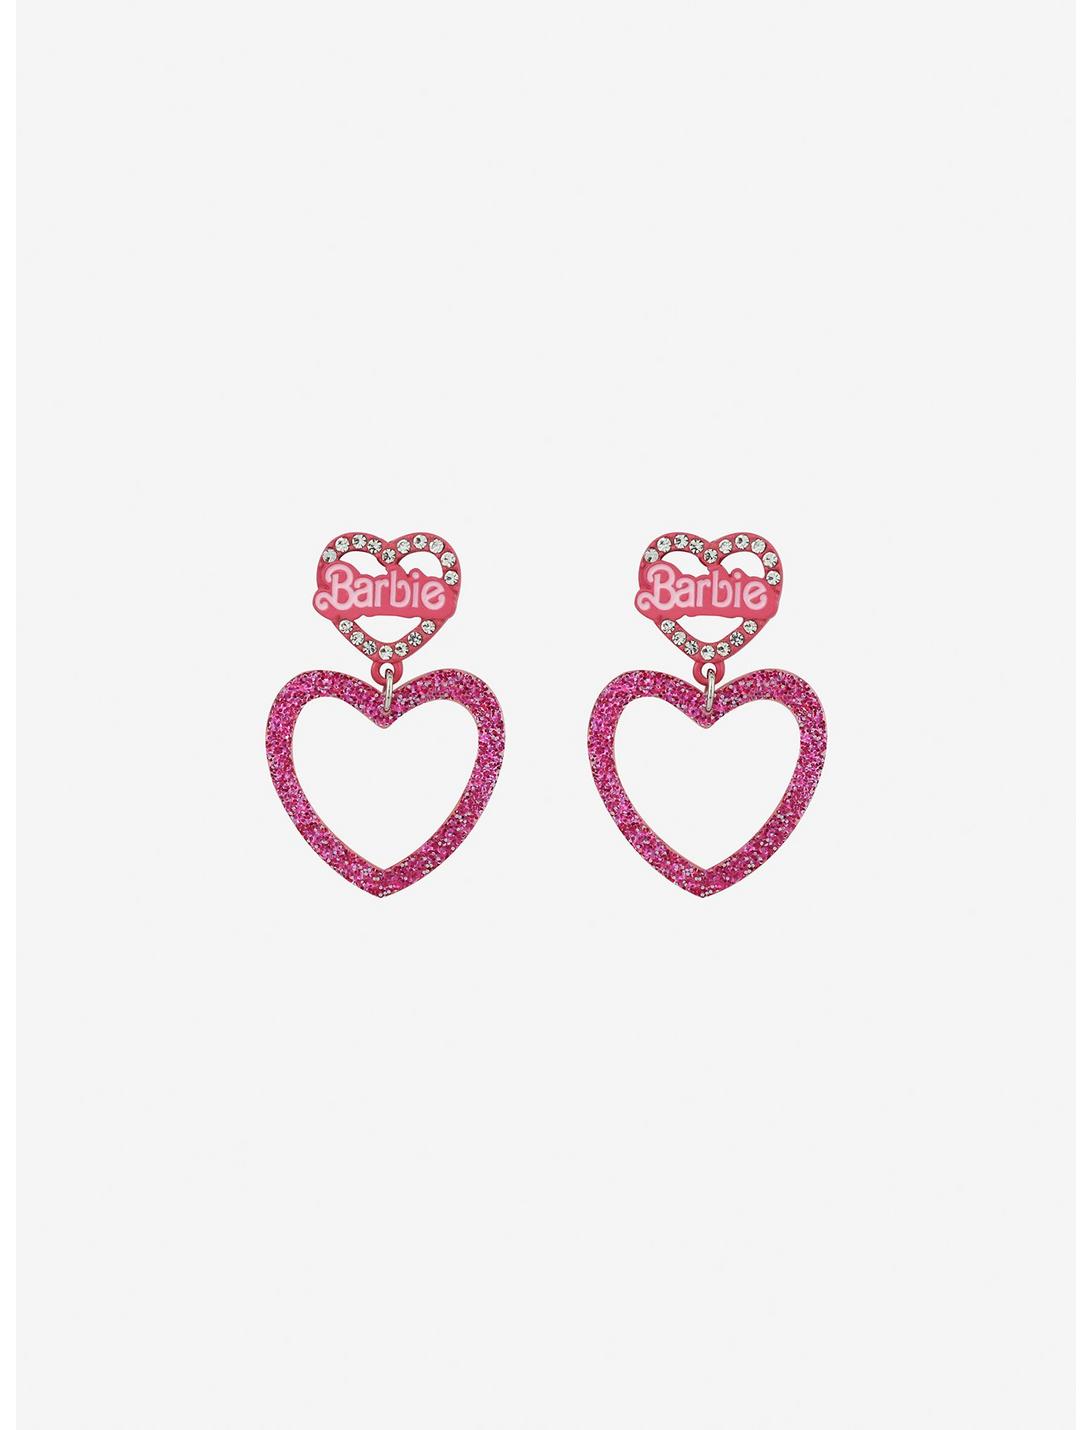 Barbie Bling Glitter Heart Earrings | Hot Topic